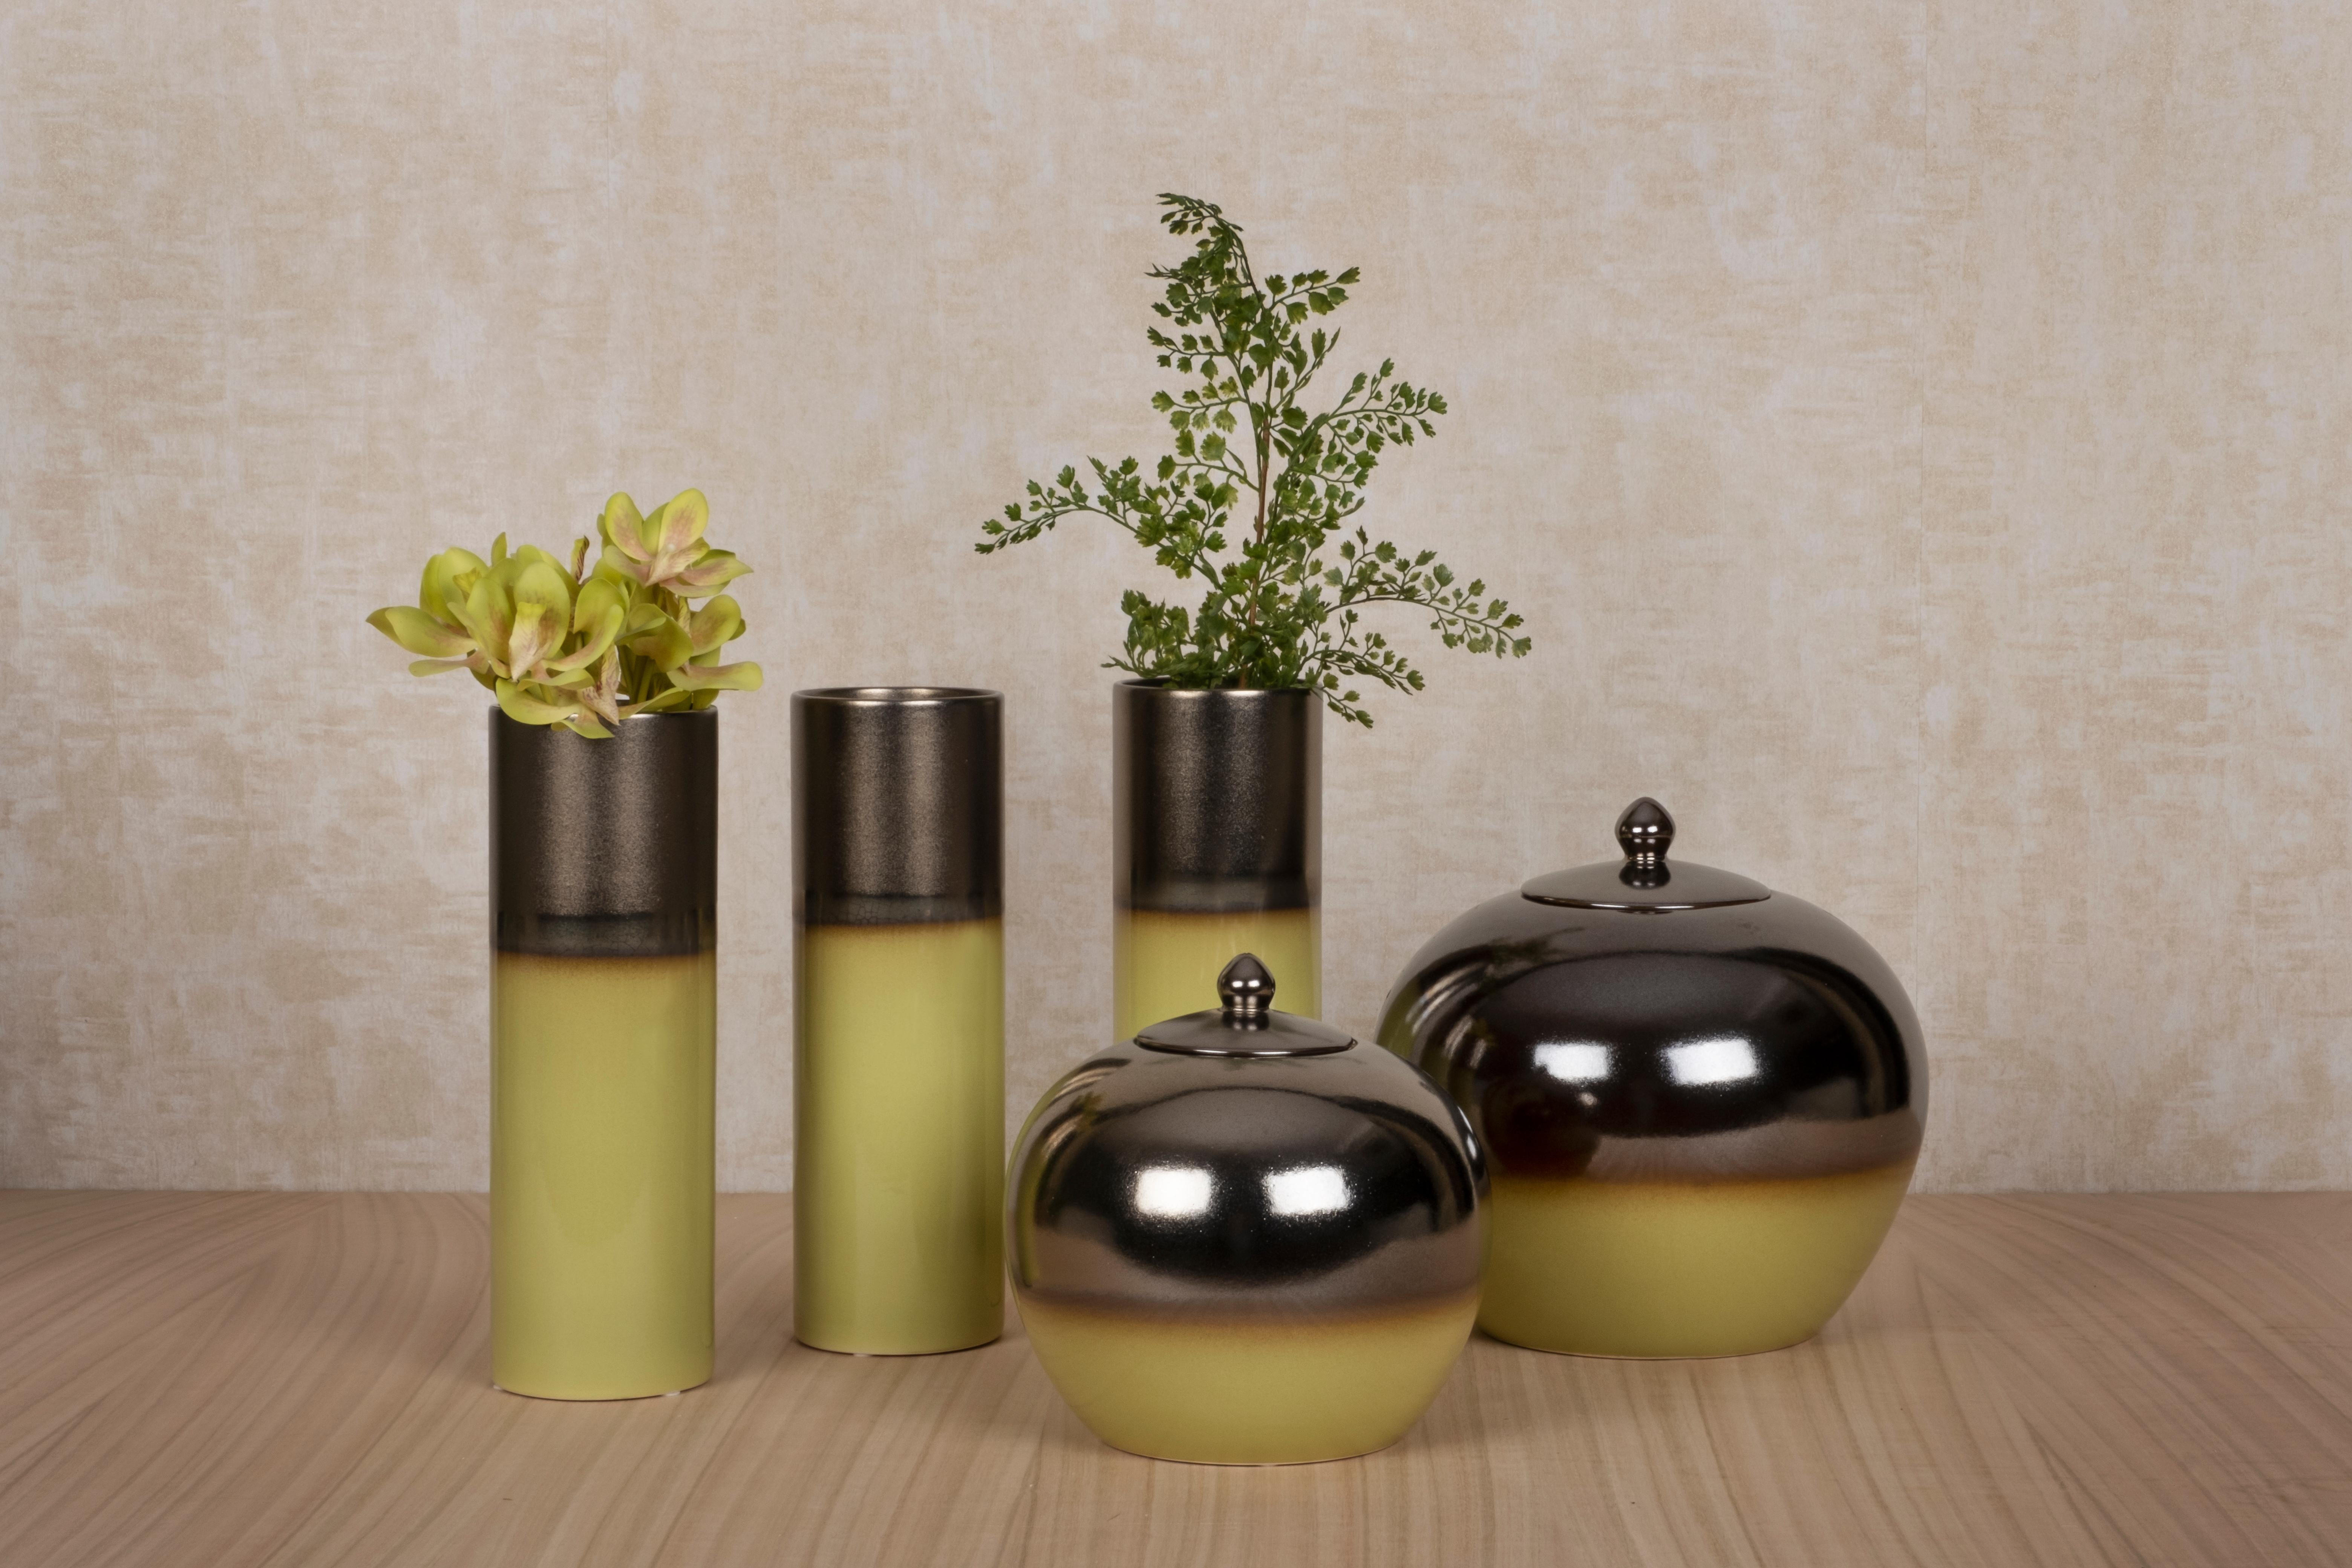 Set/5 Vasen und Töpfe aus Keramik, Grün & Bronze, Lusitanus Home Collection, Handgefertigt in Portugal - Europa von Lusitanus Home.

Dieses schöne Set besteht aus drei wasserfesten Keramikvasen und zwei Töpfen mit Deckeln, die sich perfekt